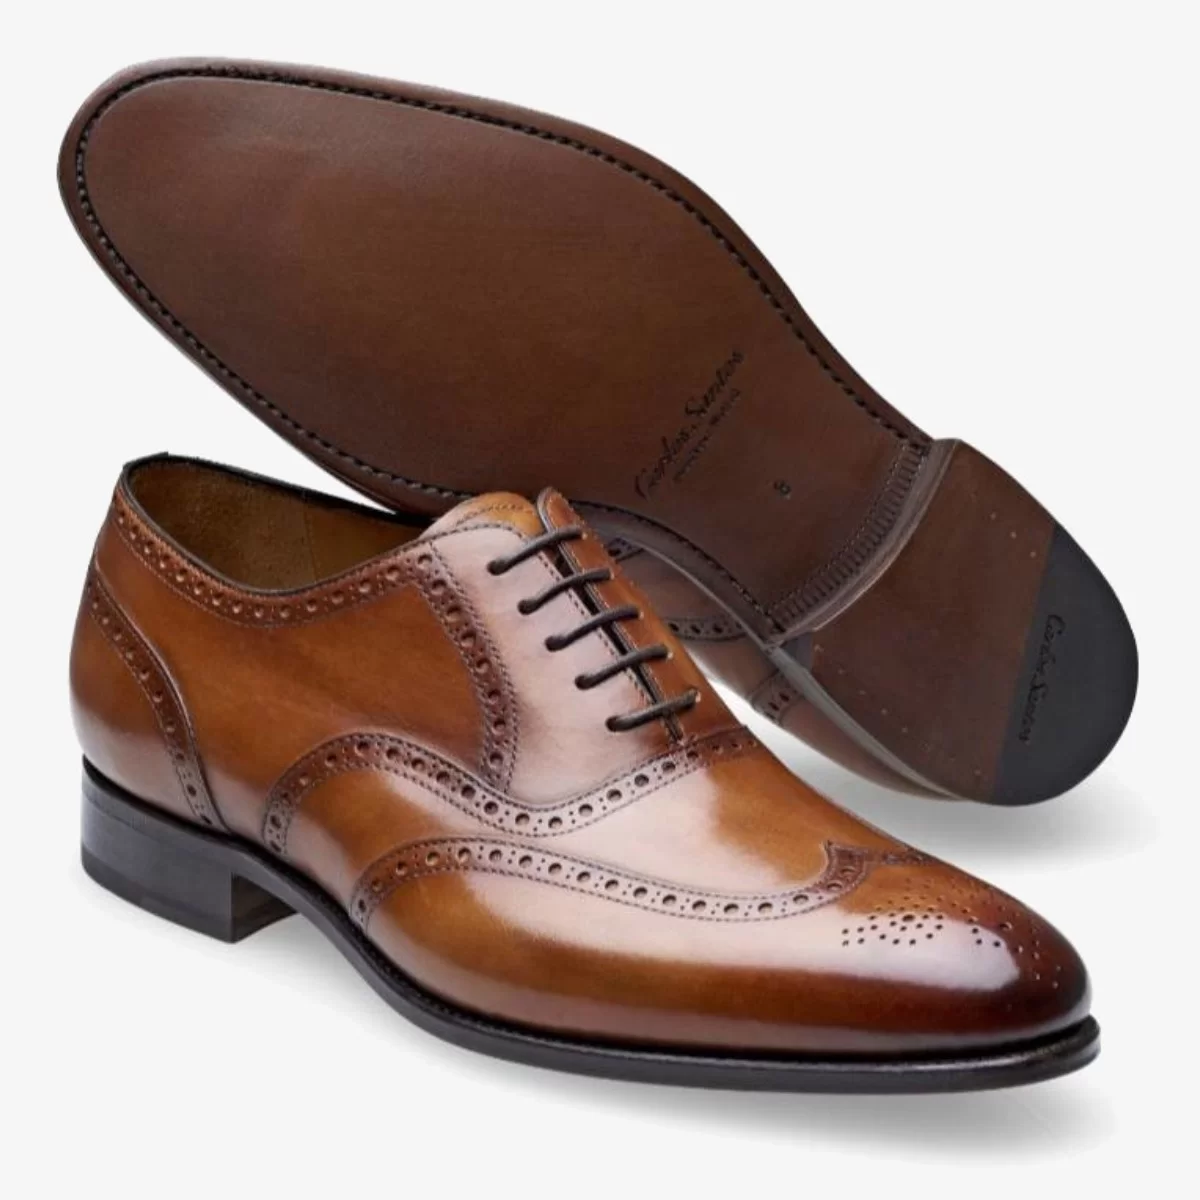 Carlos Santos 7273 Frank brown brogue men's oxford shoes